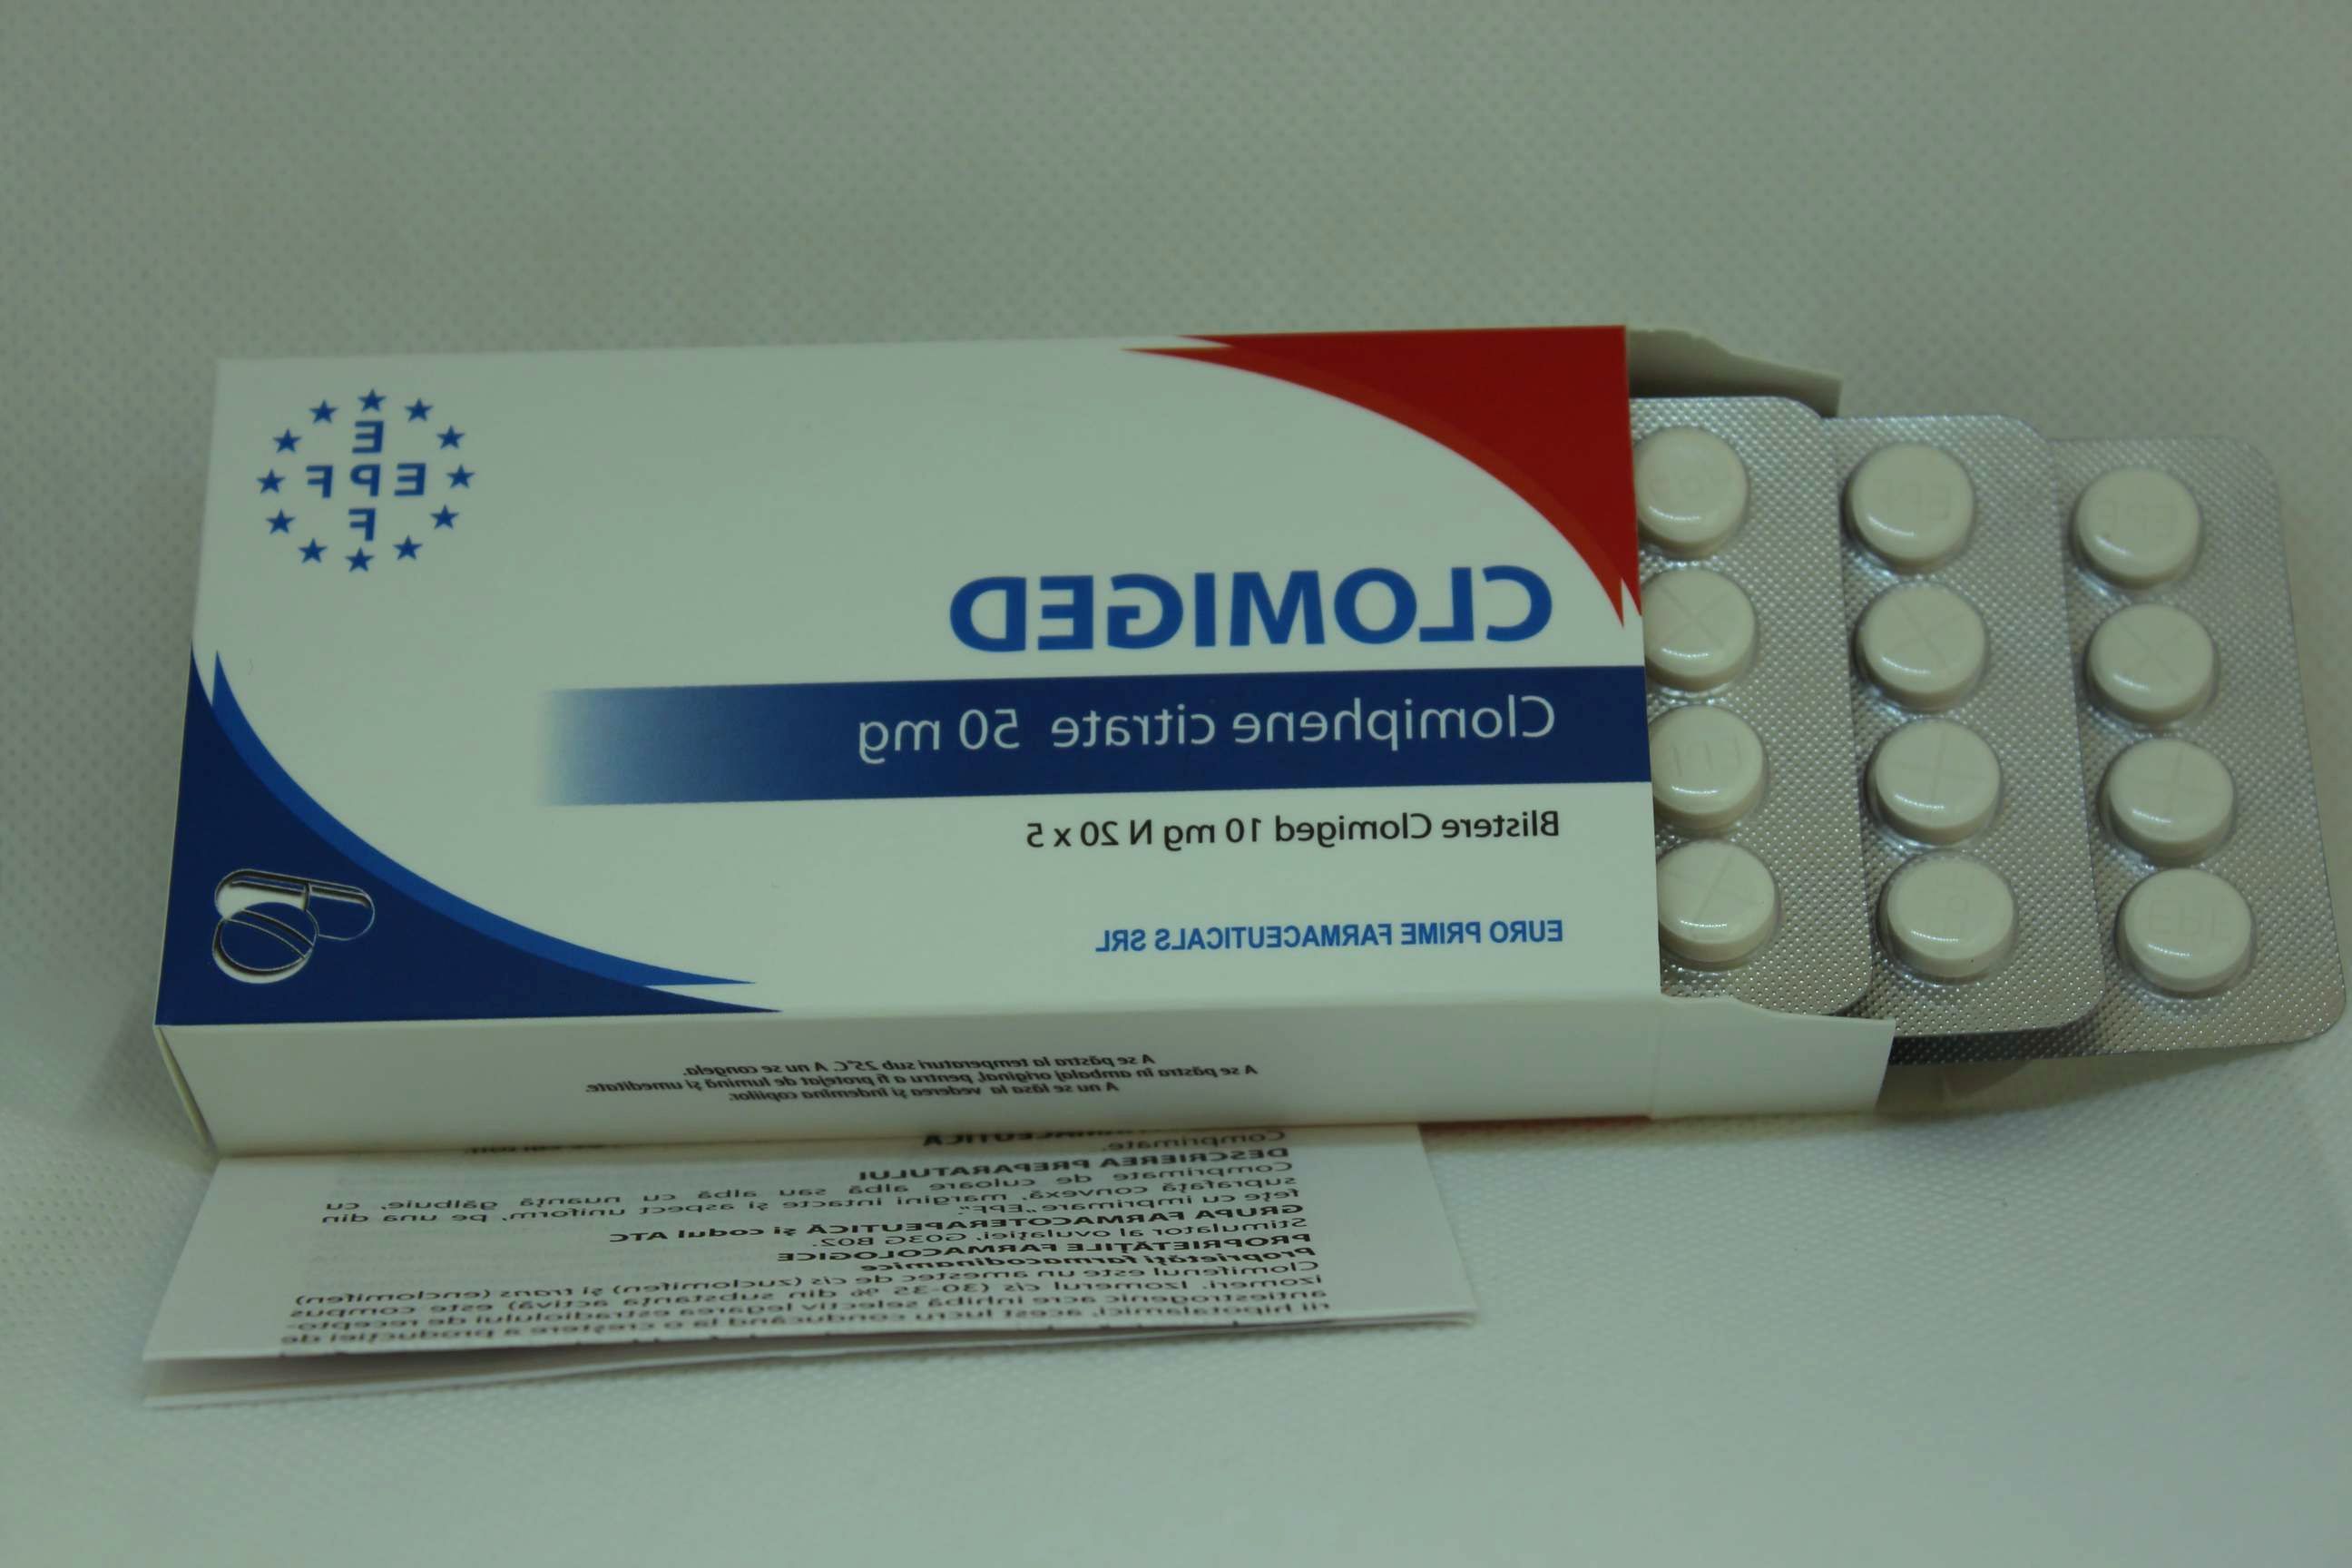 Clomid pills EPF Euro Prime Farmaceuticals SRL 20 tab 50 mg tab